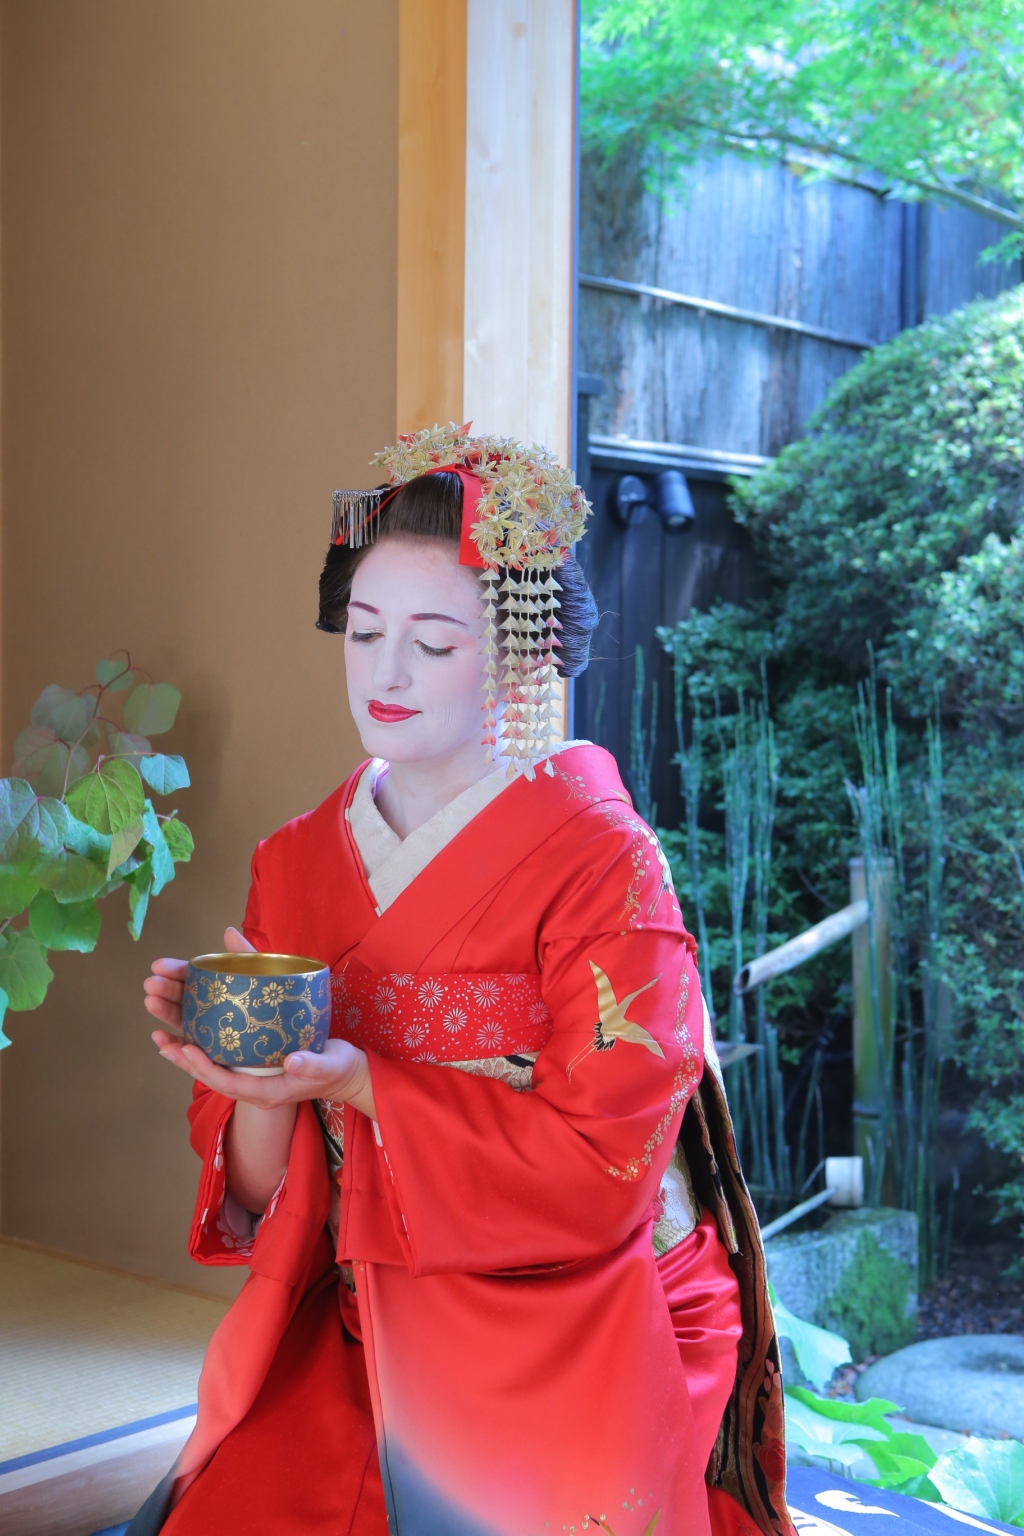 Le jour où j’ai joué les apprenties geishas à Kyoto : une expérience inoubliable (Japon #10)